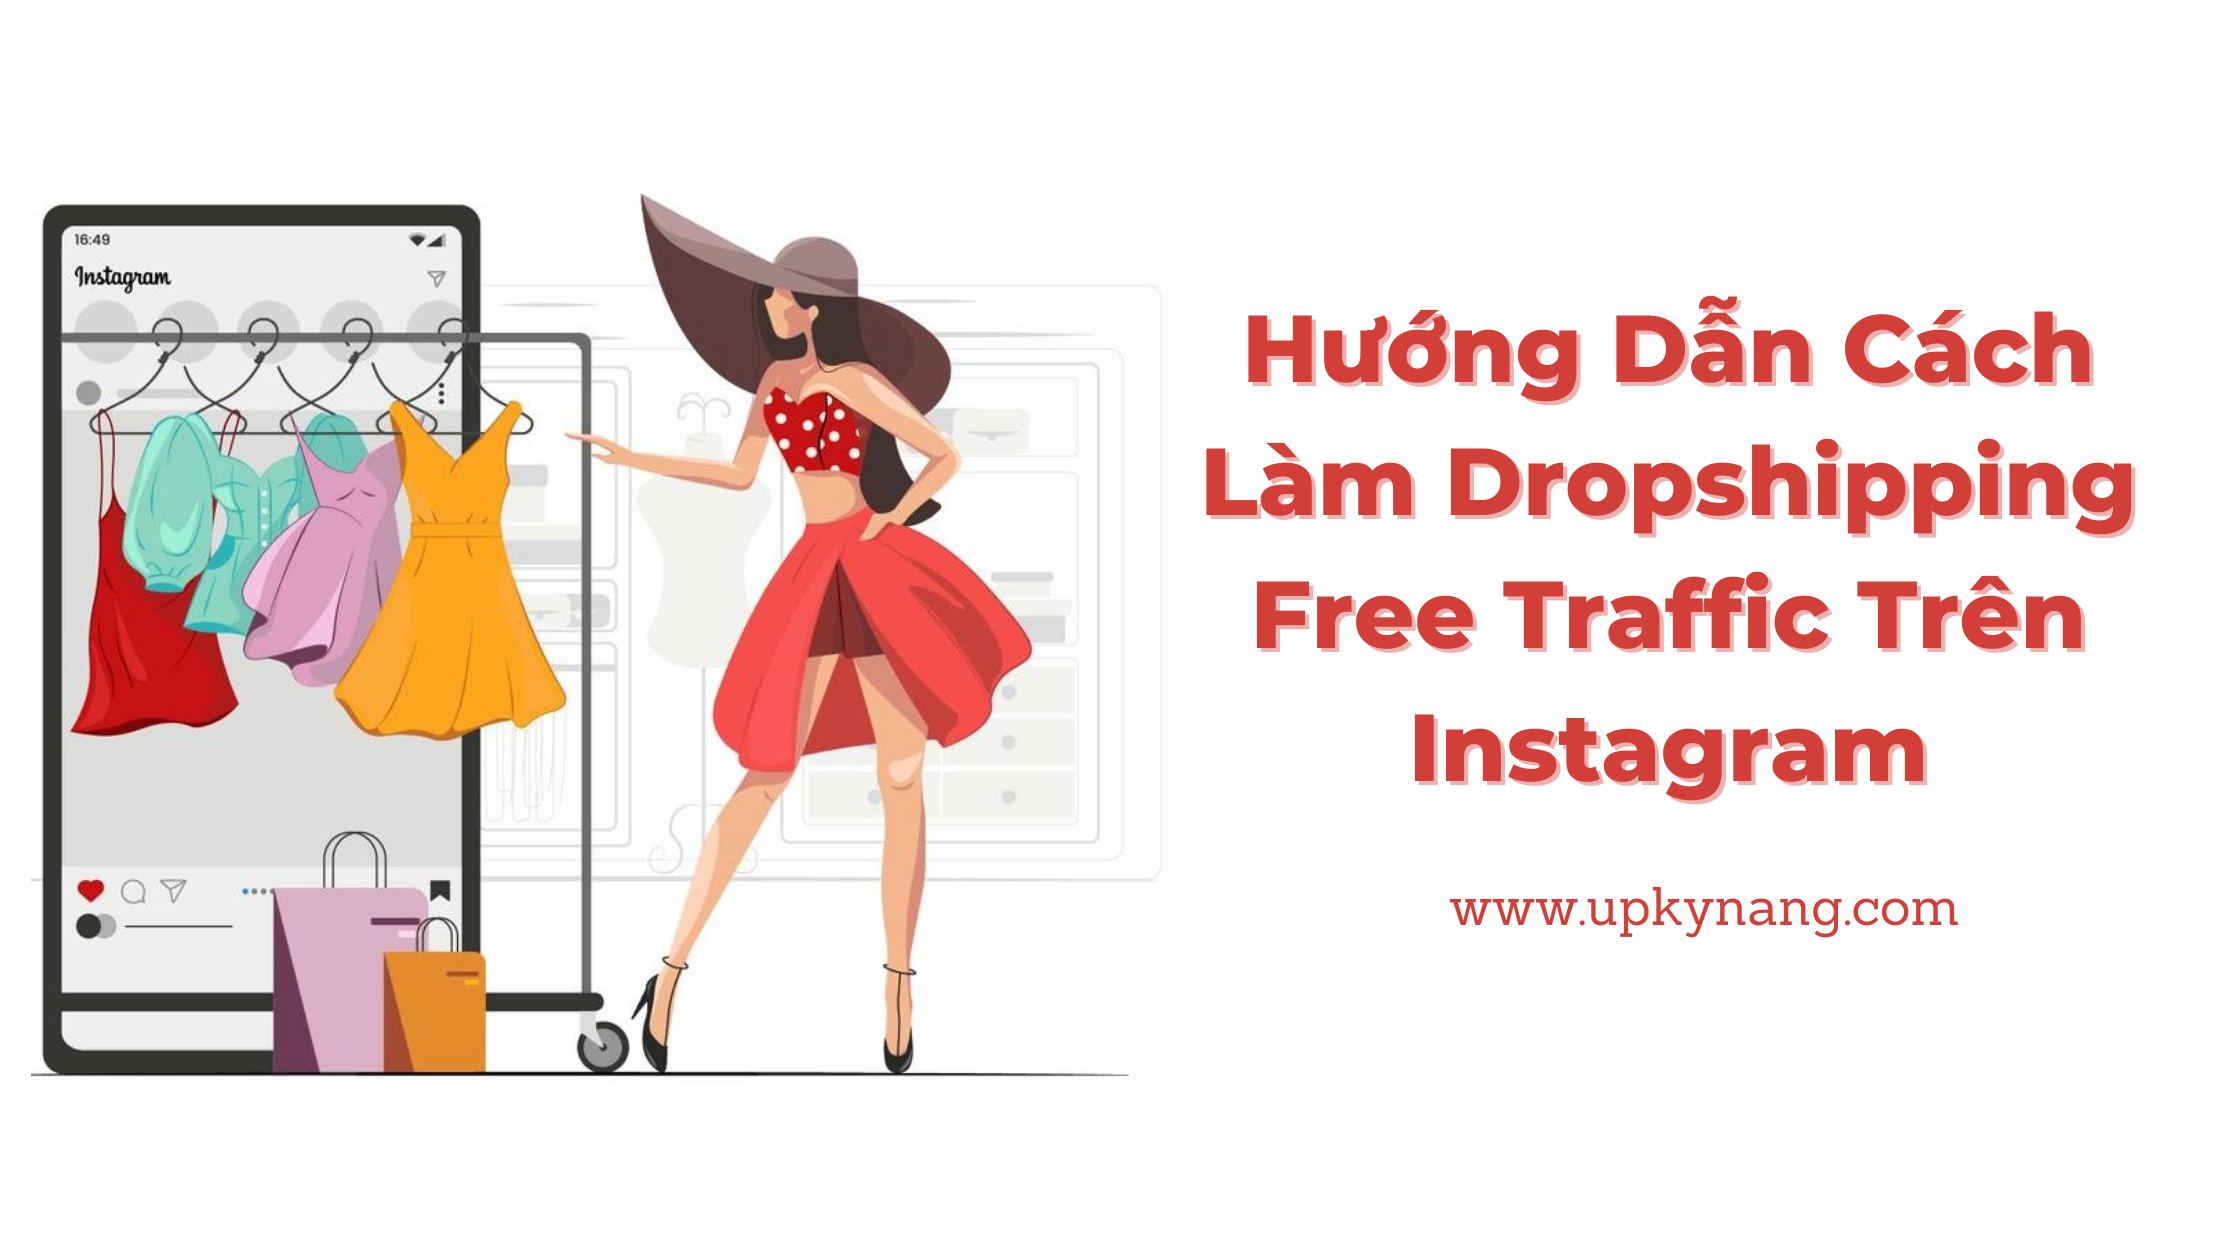 Hướng Dẫn Cách Làm Dropshipping Free Traffic Với Instagram